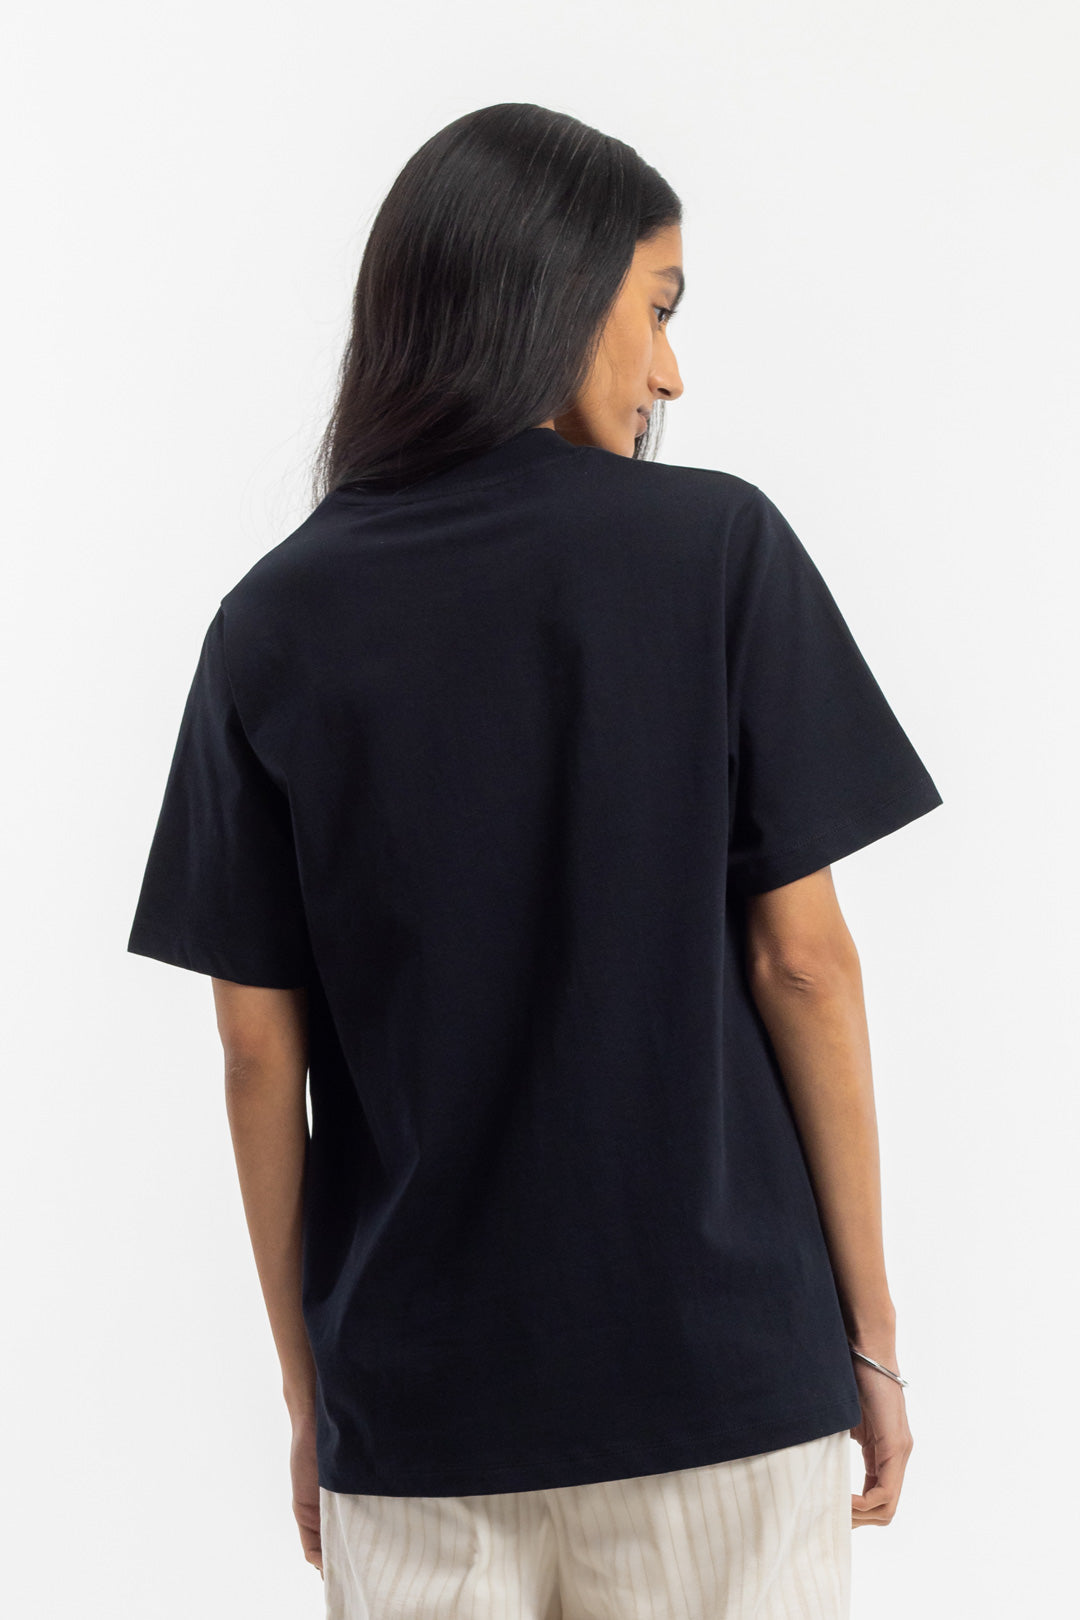 Schwarzes T-Shirt mit breitem Kragen aus 100% Bio Baumwolle von Rotholz